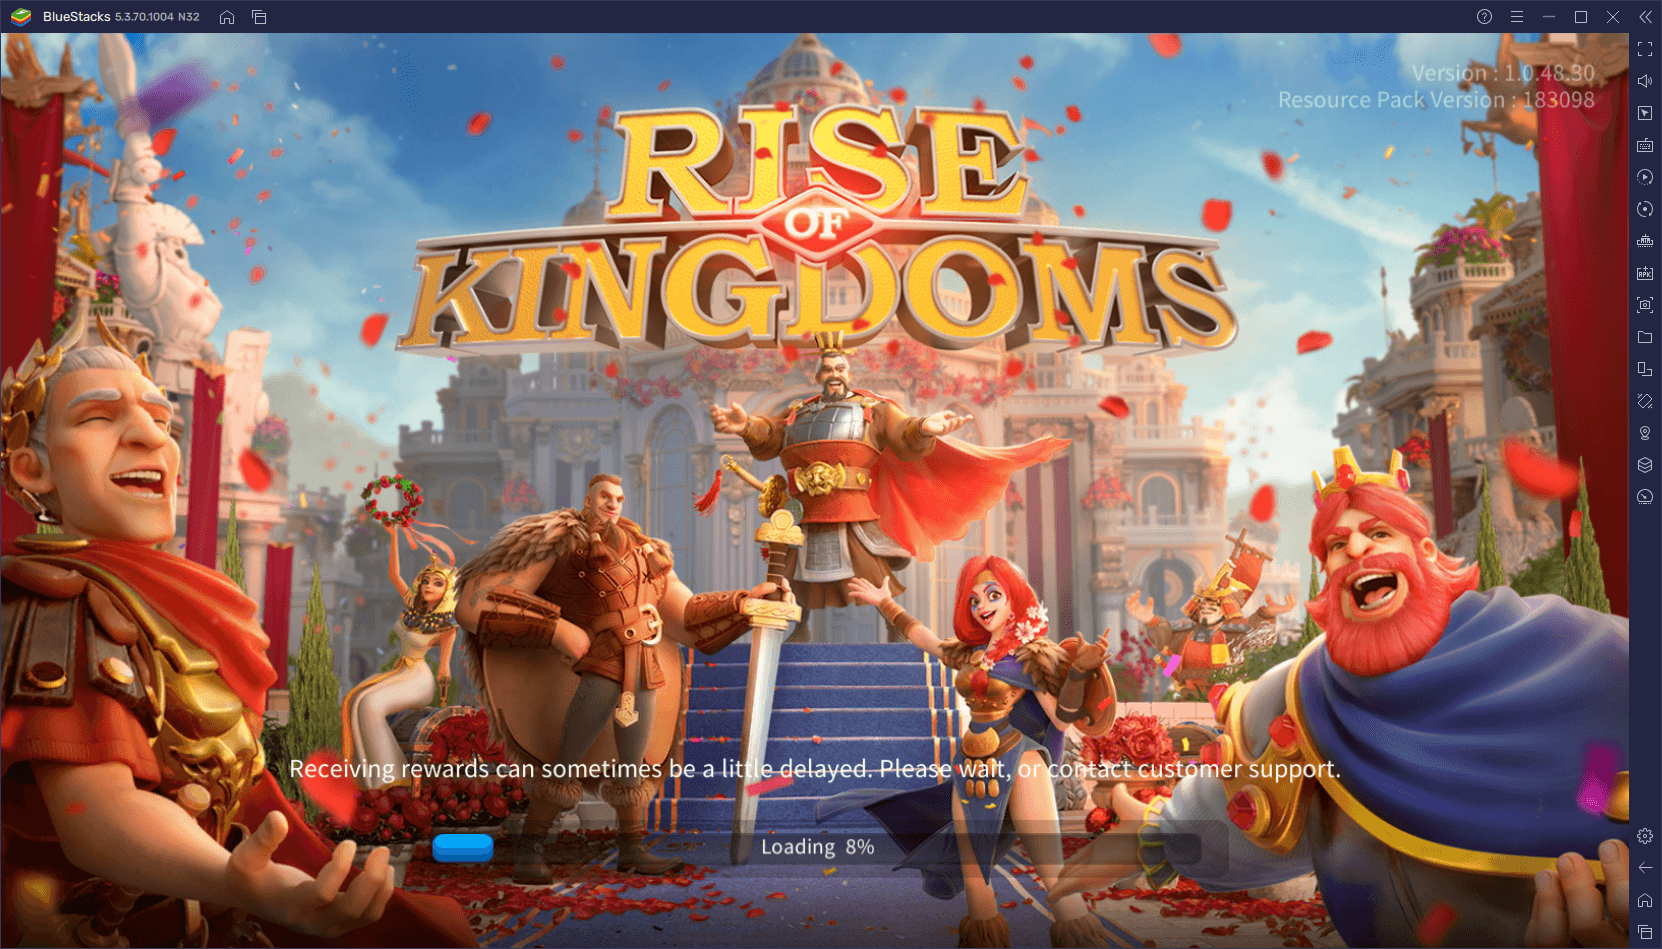 فوائد لعب لعبة Rise of Kingdoms على محاكي BlueStacks - طور مدينتك بنقرات قليلة ، واجعل تعدد المهام أسهل وأكثر